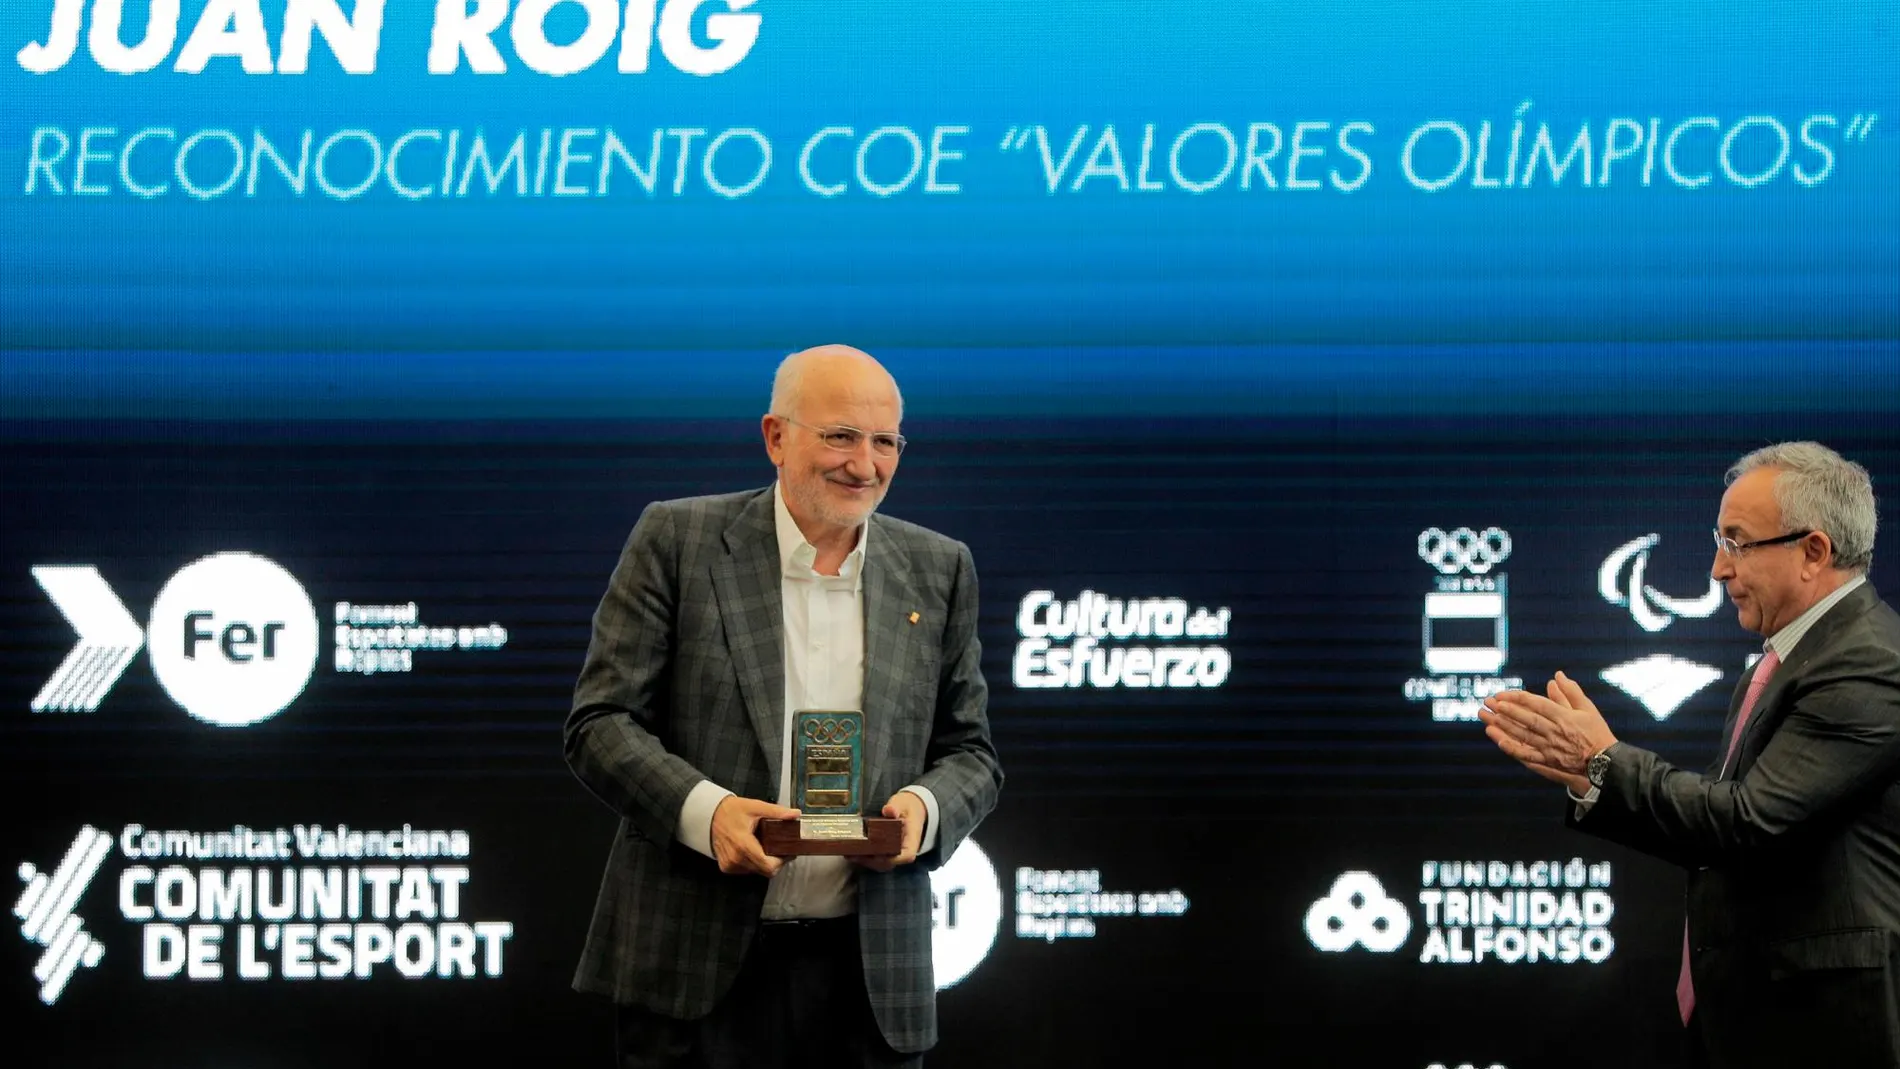 El presidente del COE, Alejandro Blanco, entregó al presidente de la Fundación Trinidad Alfonso, Juan Roig, una placa de reconocimiento del COE a los «Valores Olímpicos»